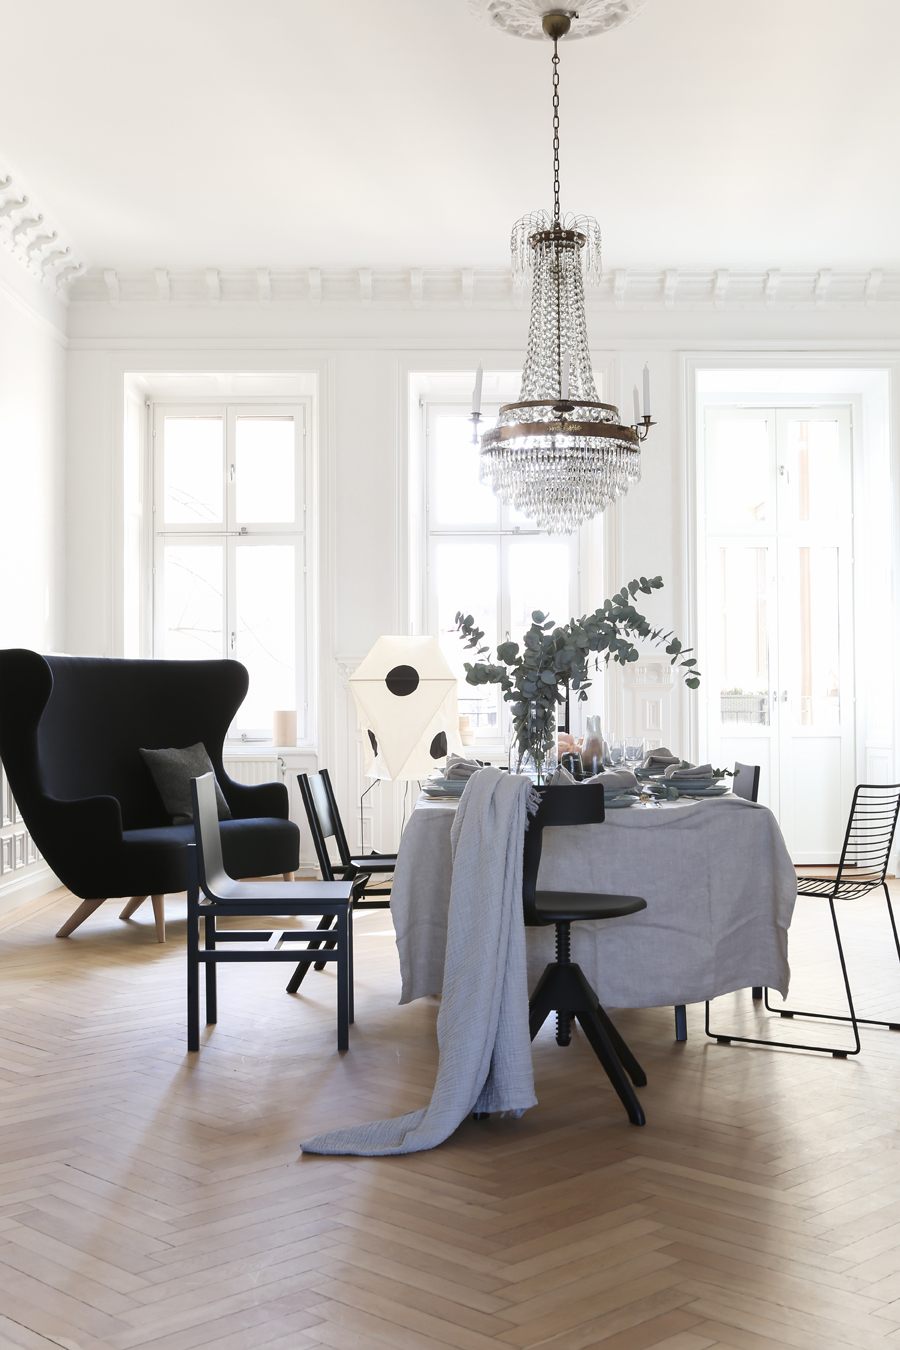 Valhallavagen Apartment for Eklund Stockholm New York by Annaleena Leino